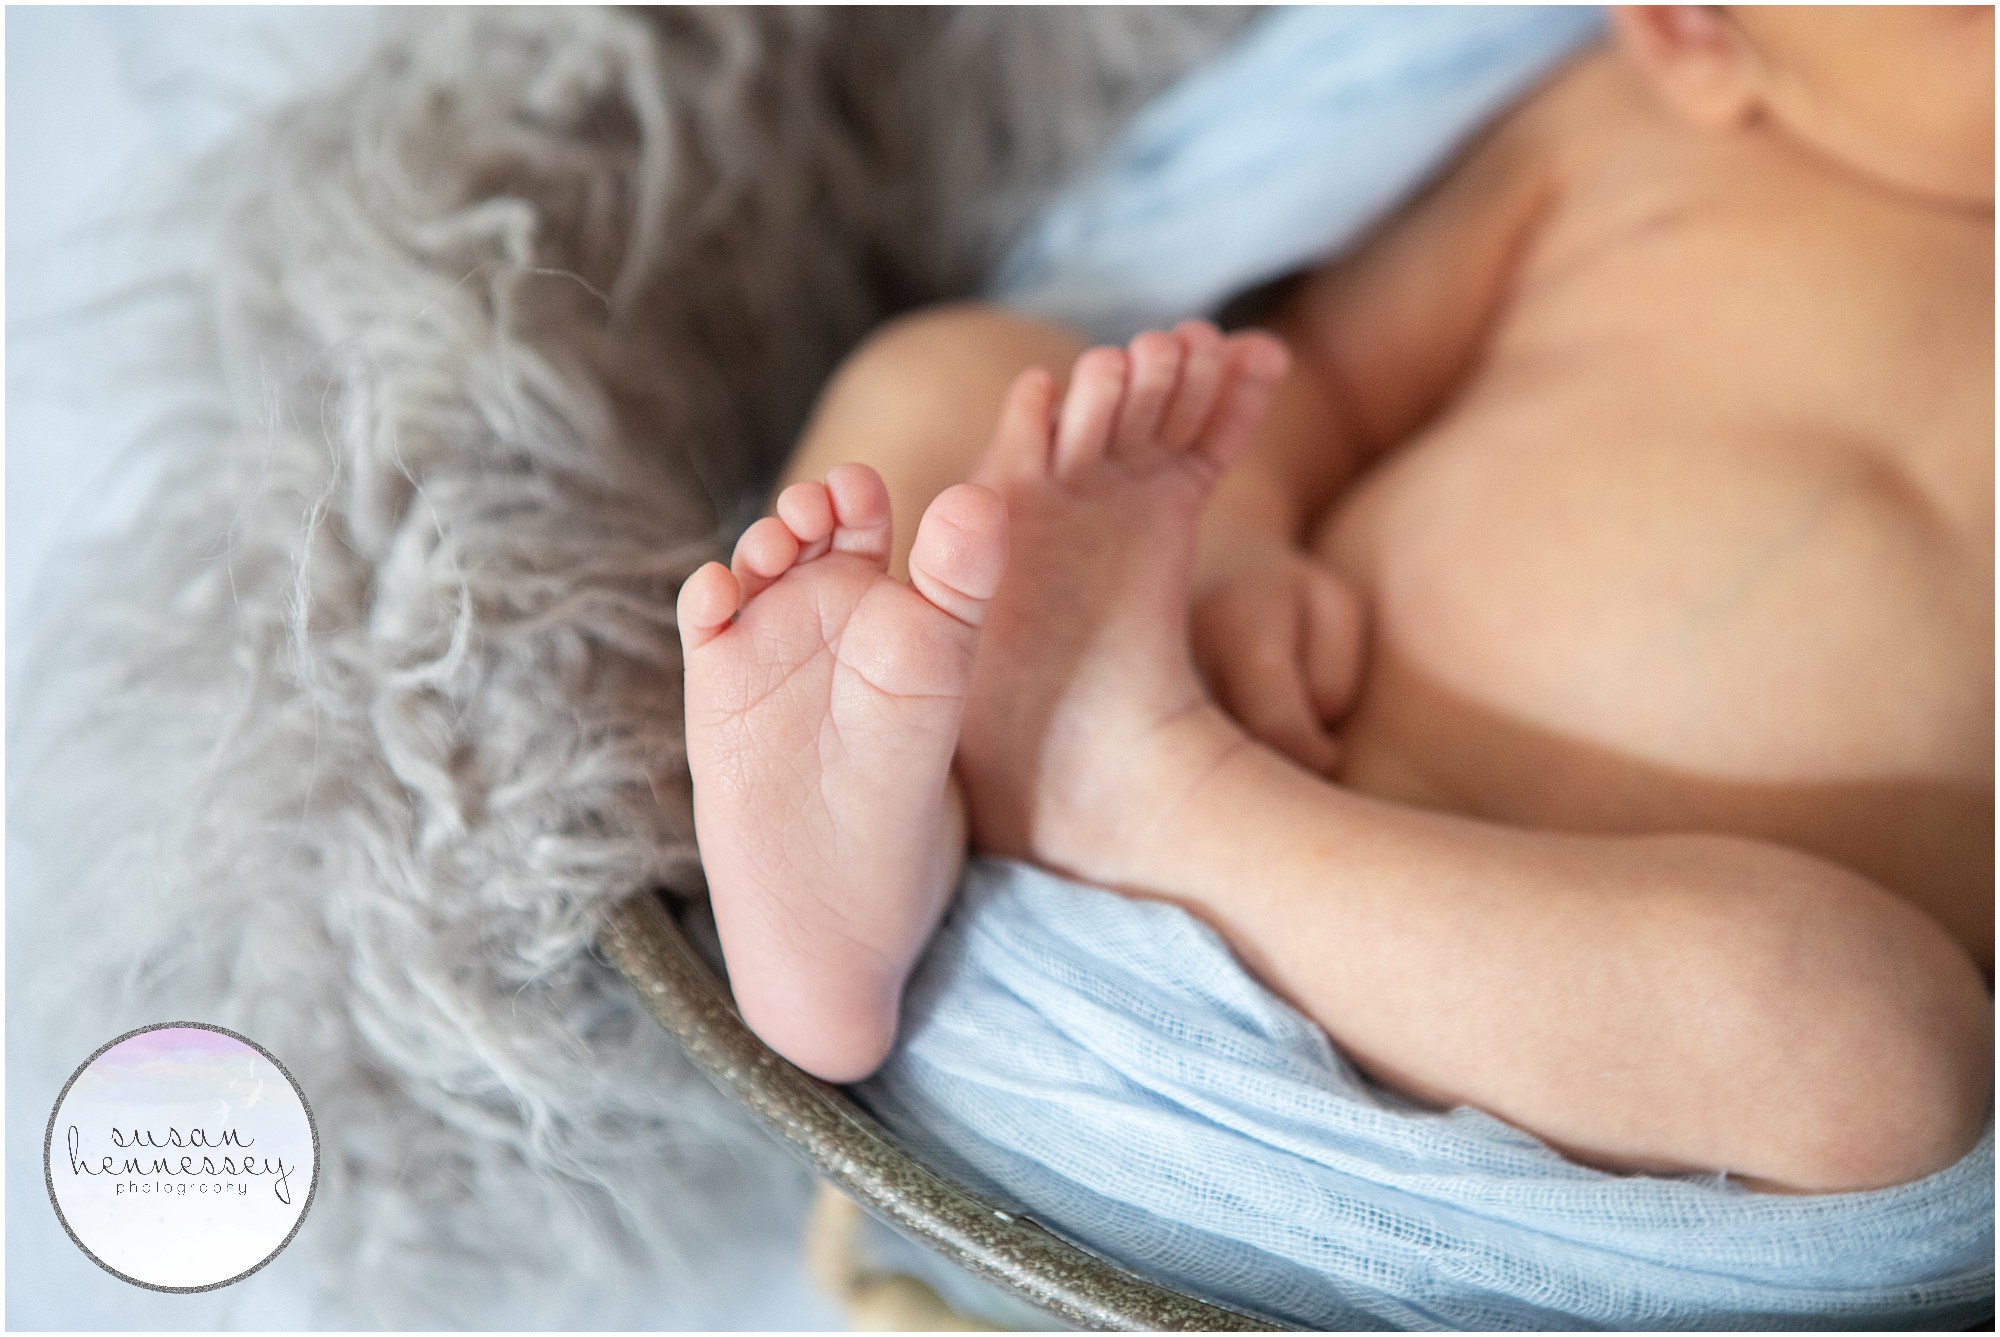 A close up of newborn baby boy's feet